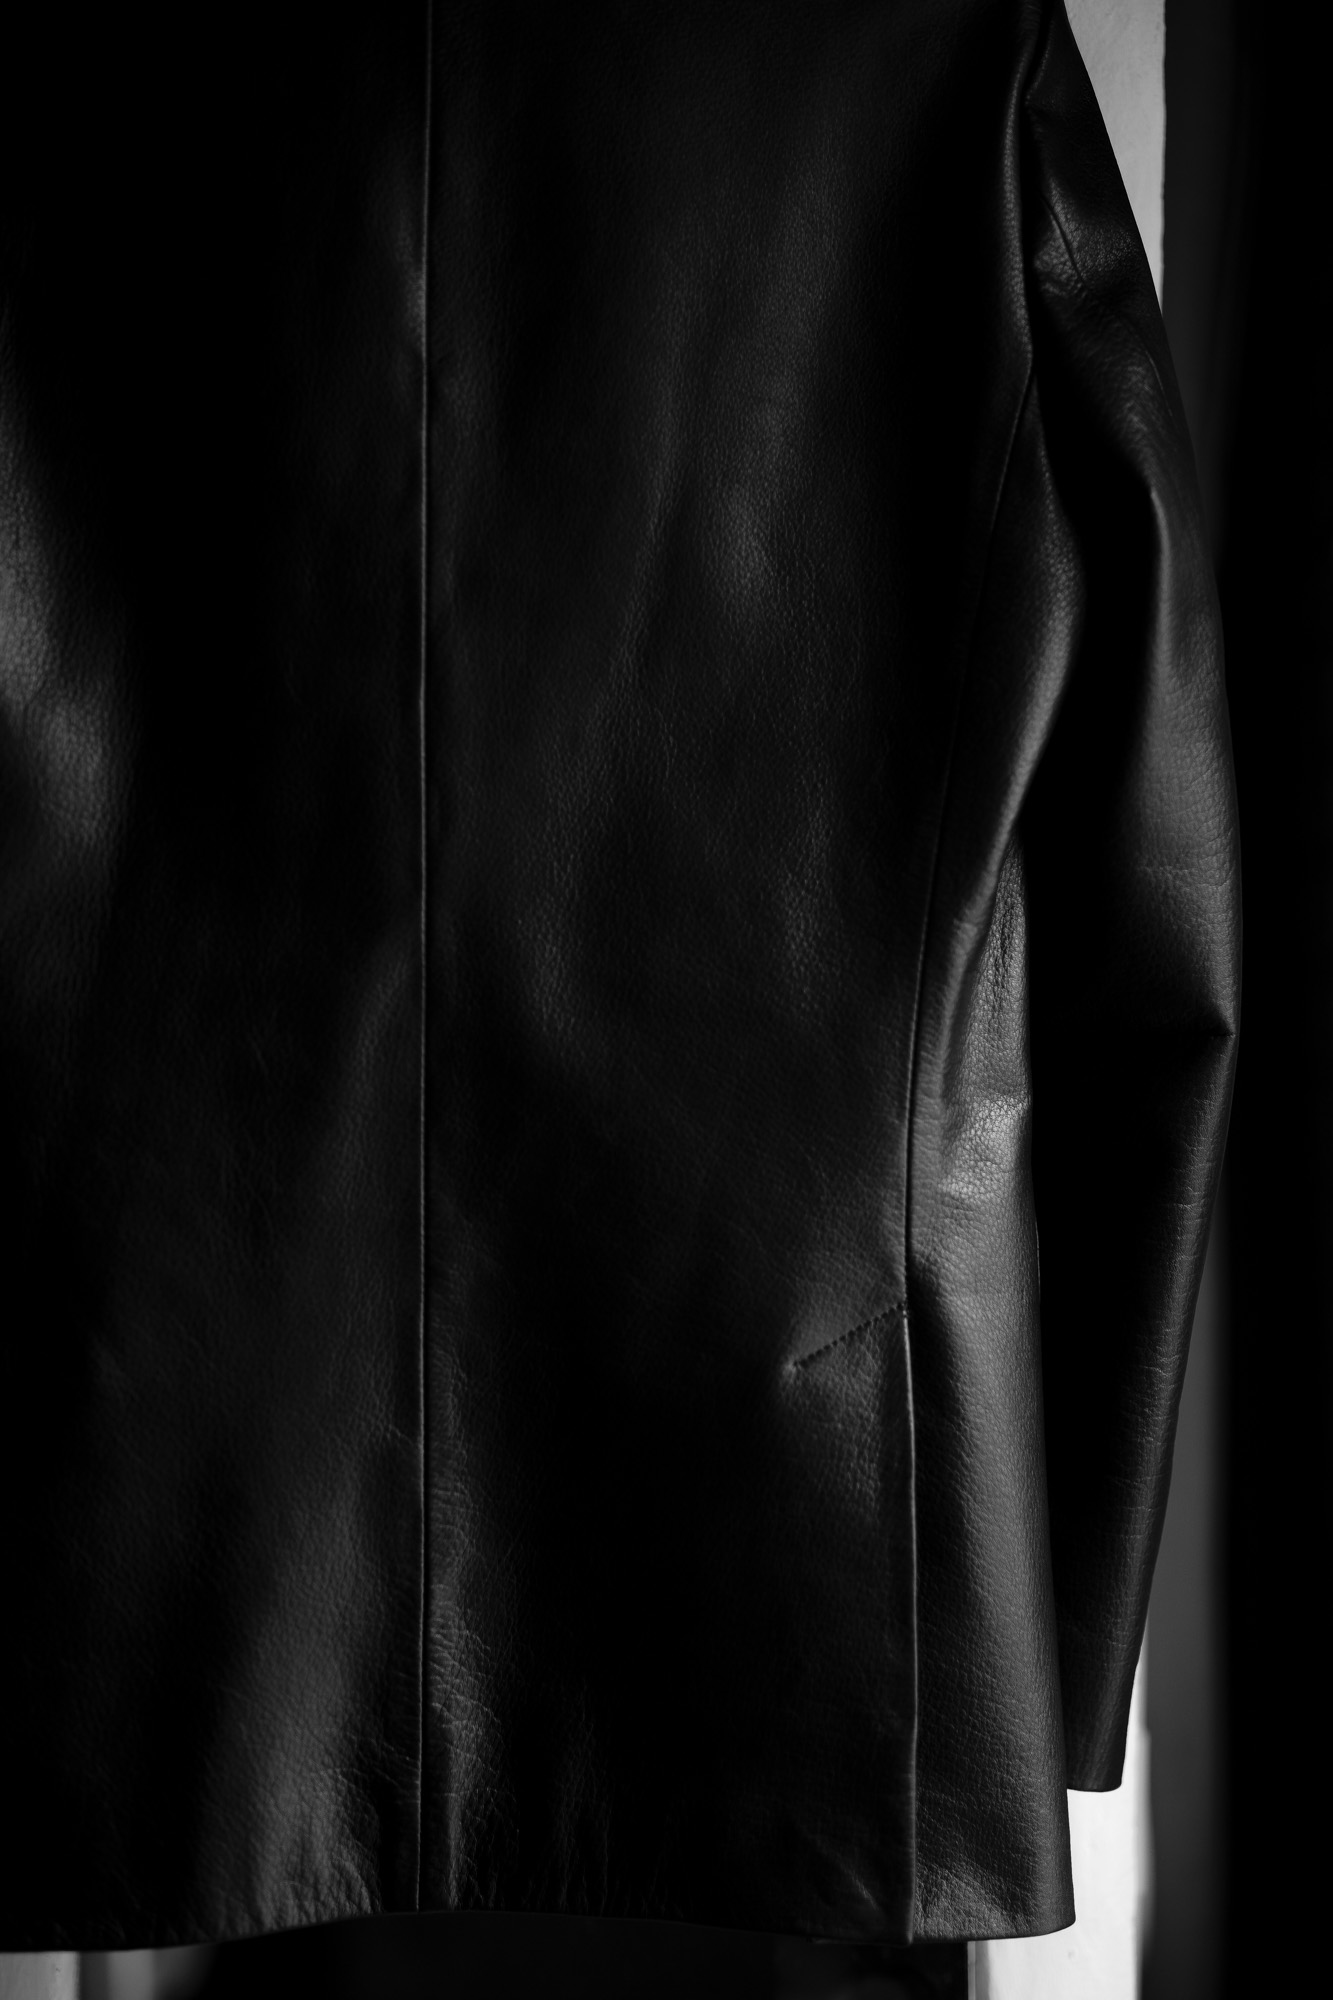 Cuervo (クエルボ) Satisfaction Leather Collection (サティスファクション レザー コレクション) LEON (レオン) BUFFALO LEATHER (バッファロー レザー) シングル テーラード ジャケット BLACK (ブラック) MADE IN JAPAN (日本製) 2019 秋冬